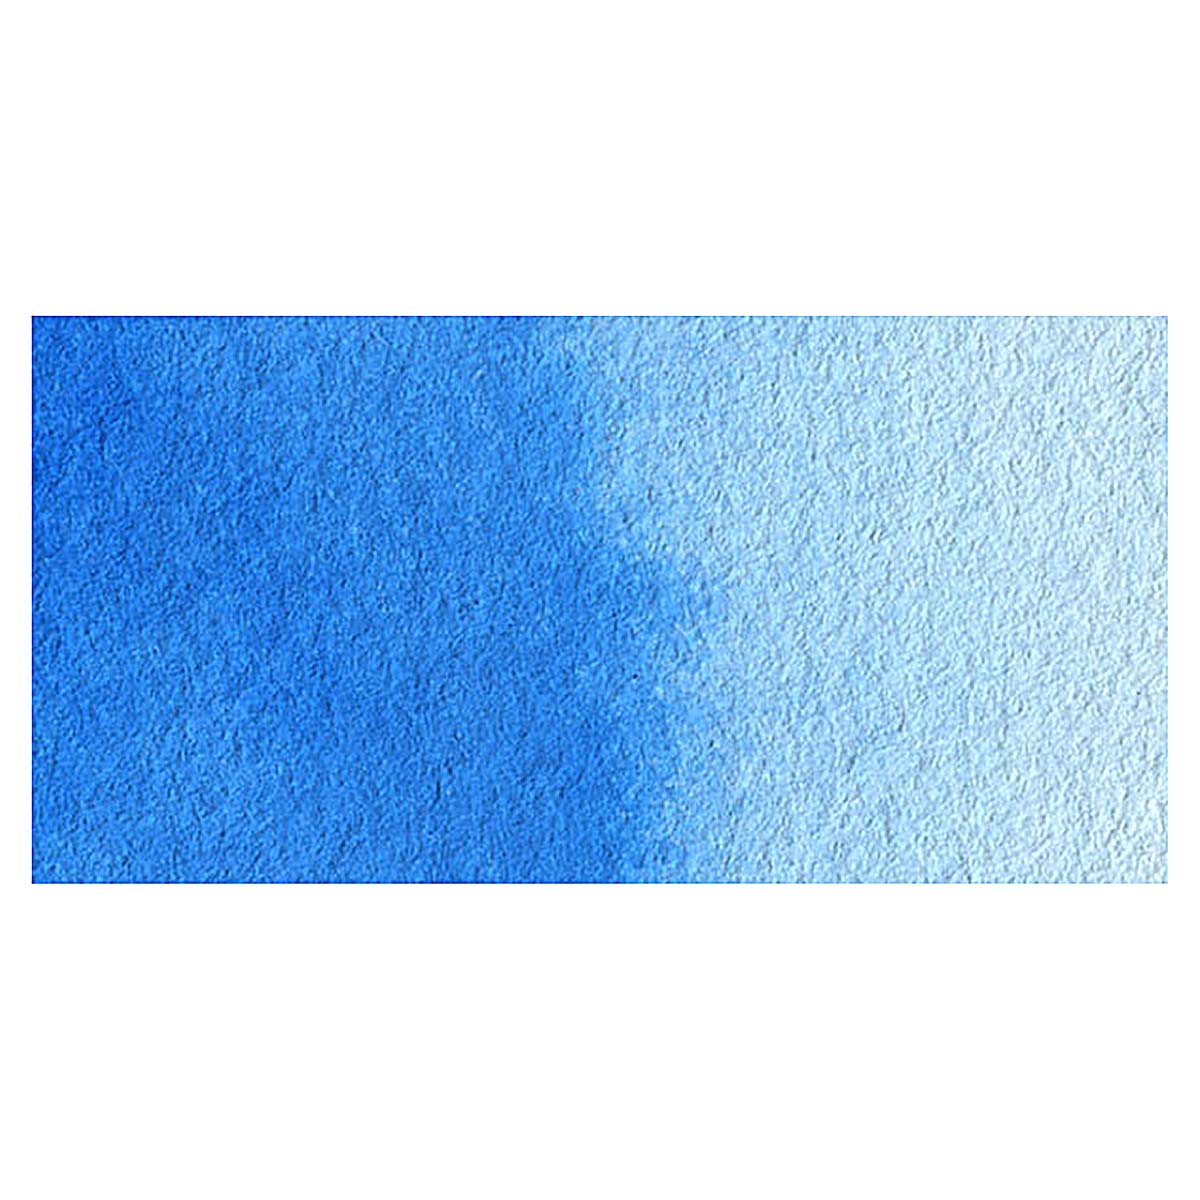 Da Vinci Cerulean Blue Artist Watercolor Paint – 37ml